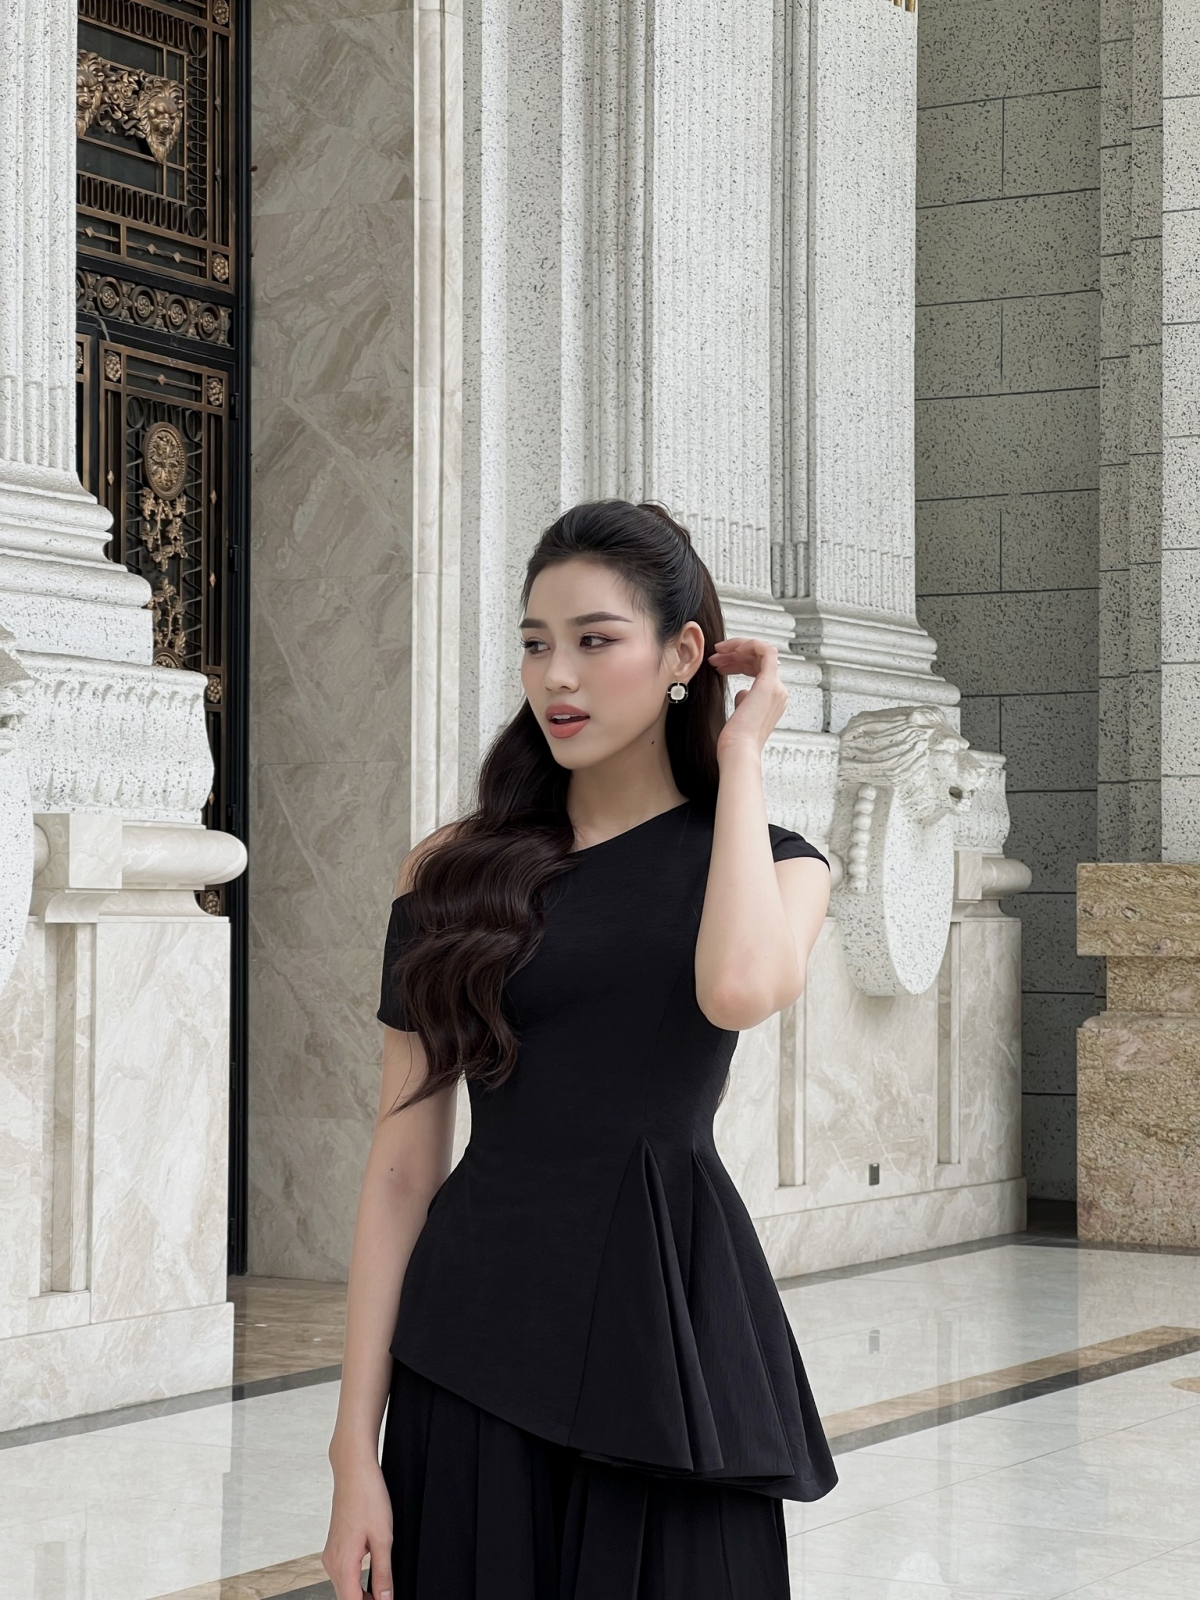 Hoa hậu Đỗ Thị Hà hóa nàng thơ yêu kiều với đầm voan lệch vai gợi cảm - Ảnh 7.